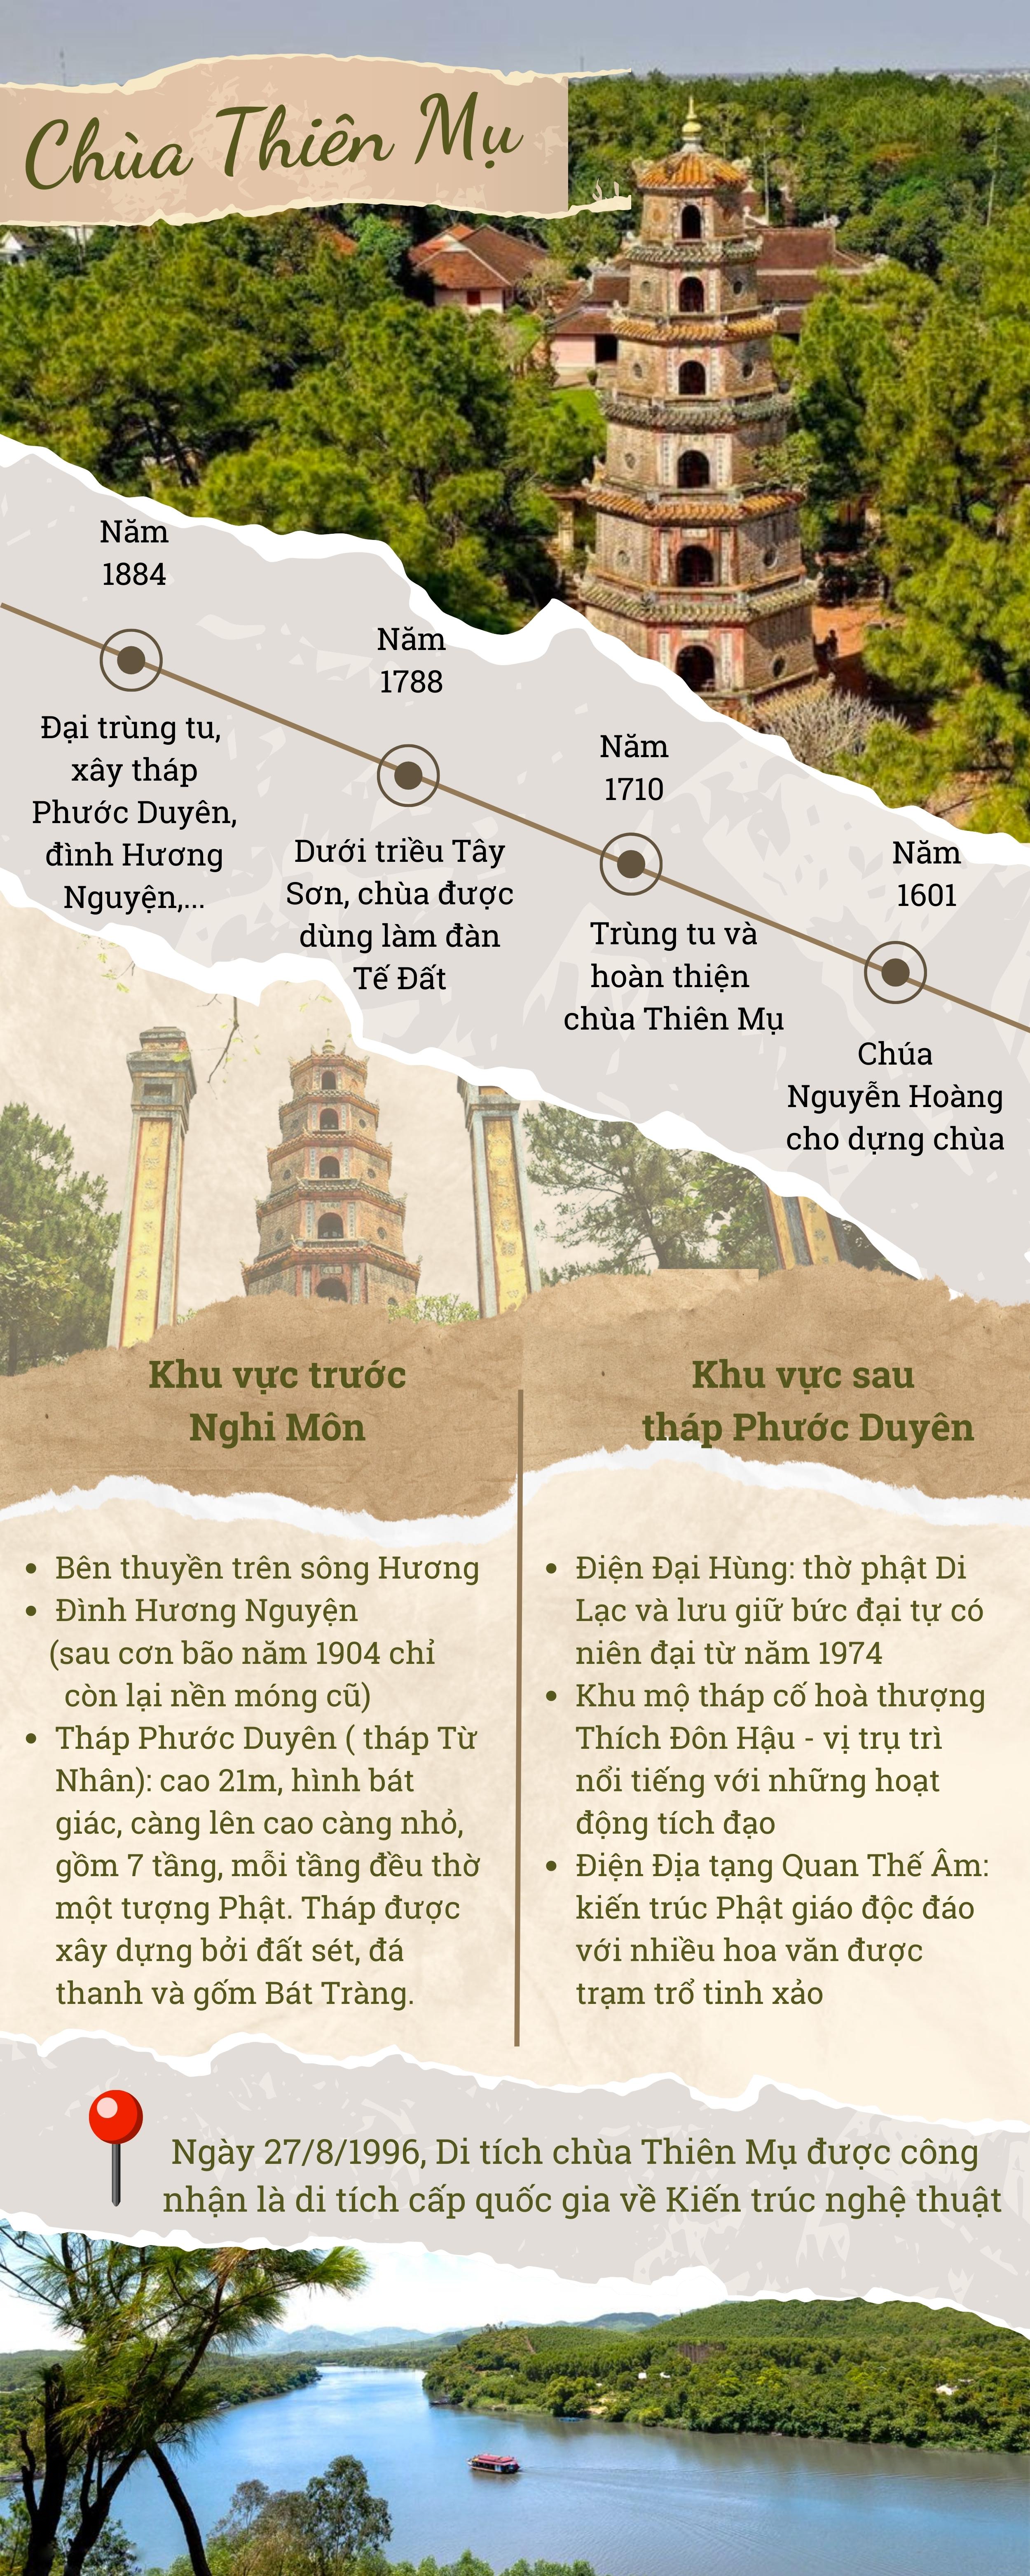 Tổng quan kiến trúc chùa Thiên Mụ